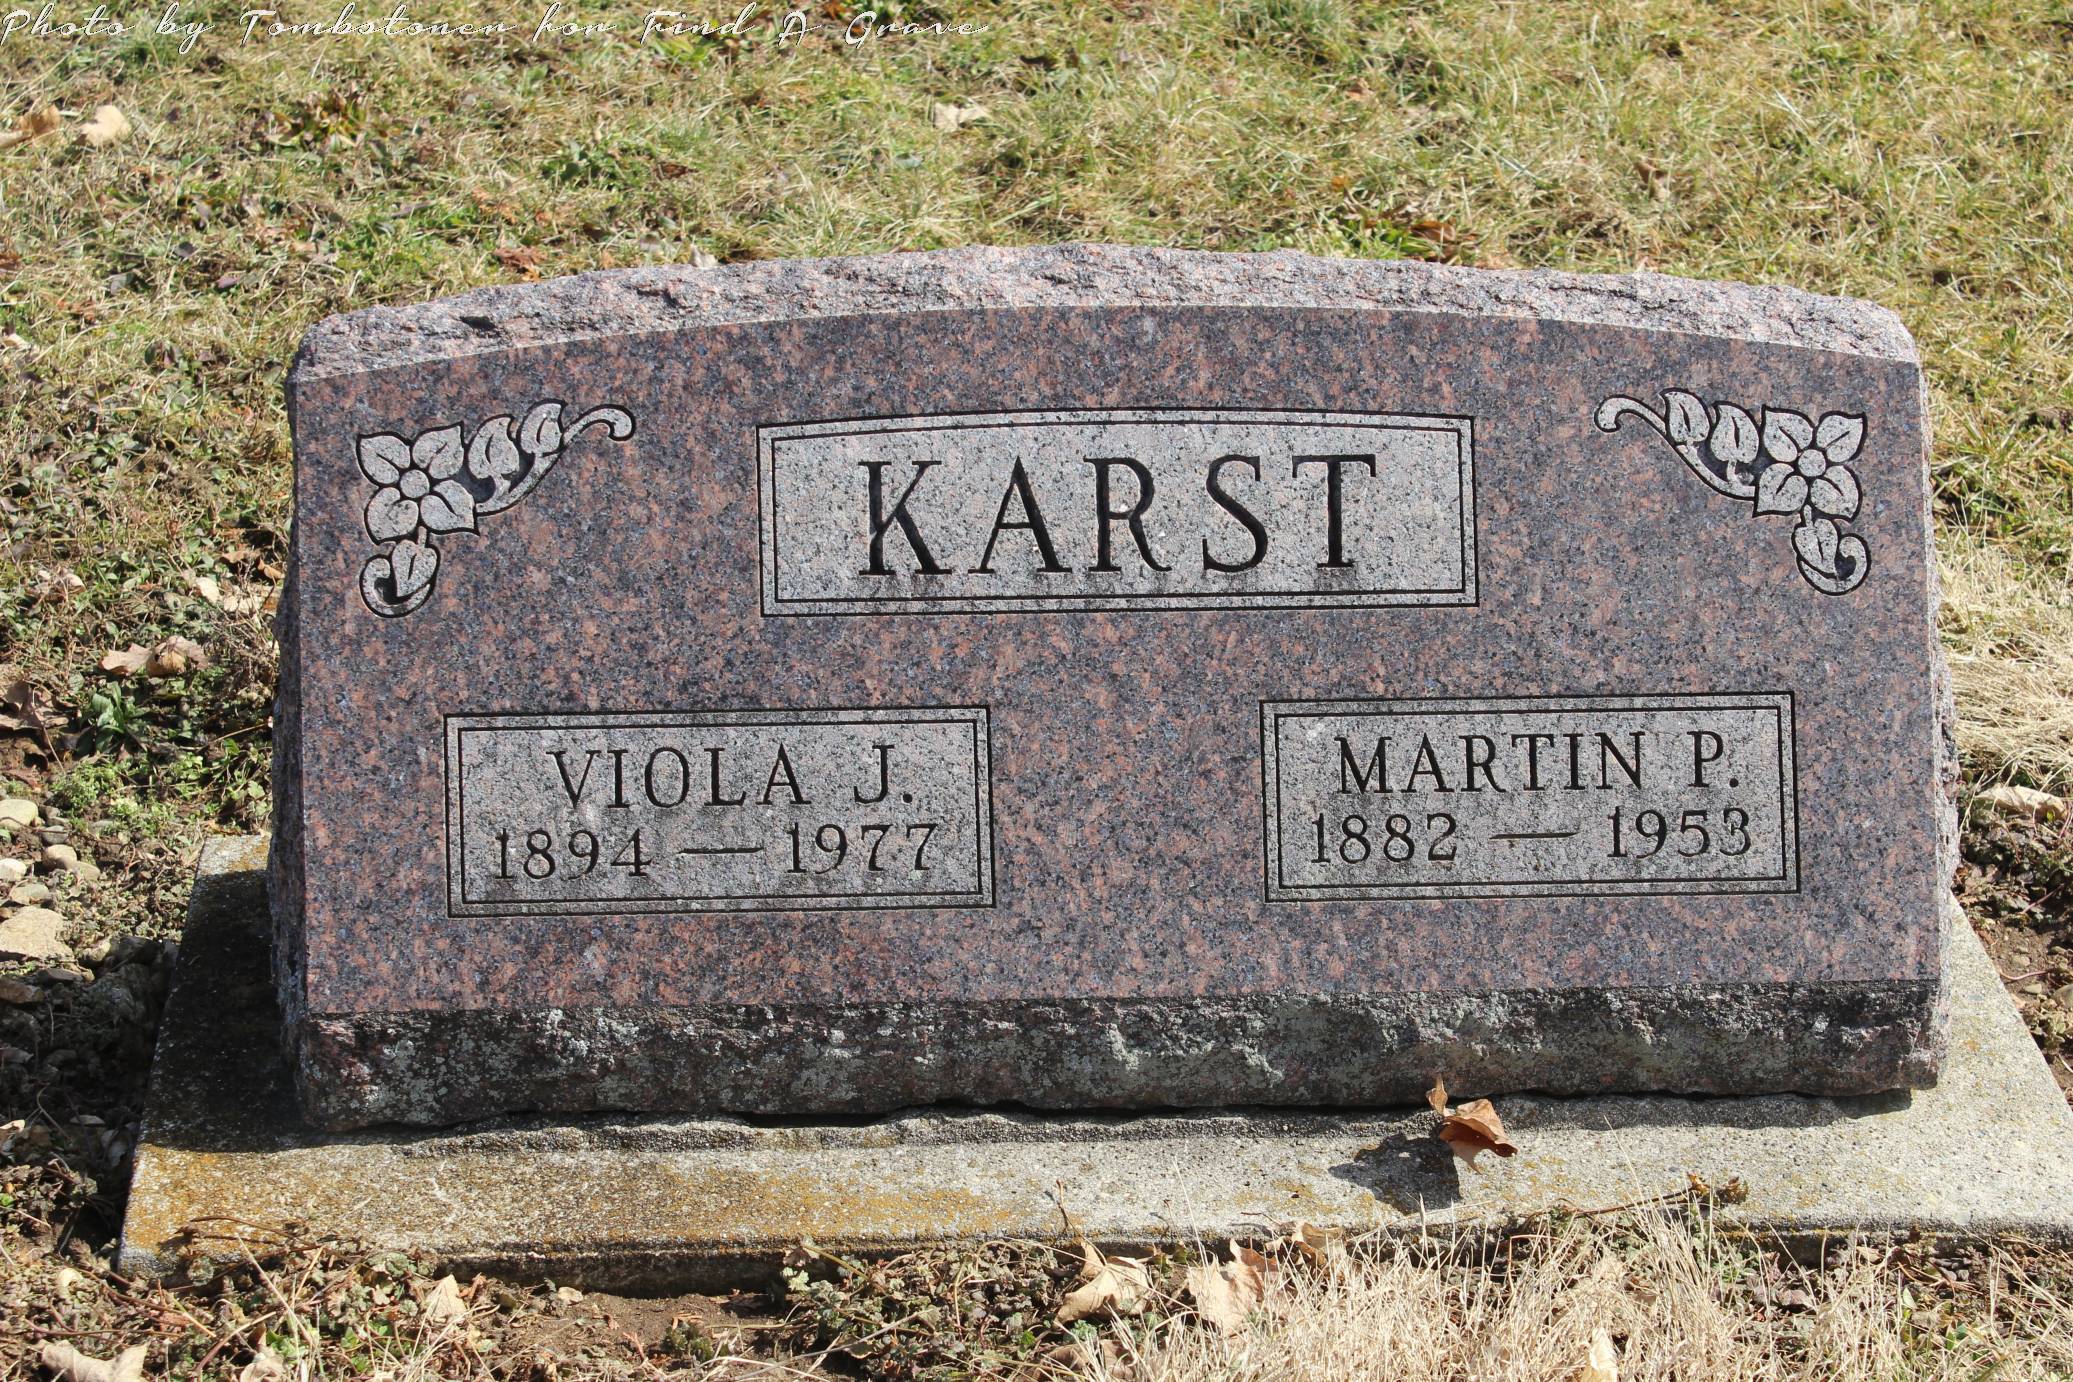 Viola Karst